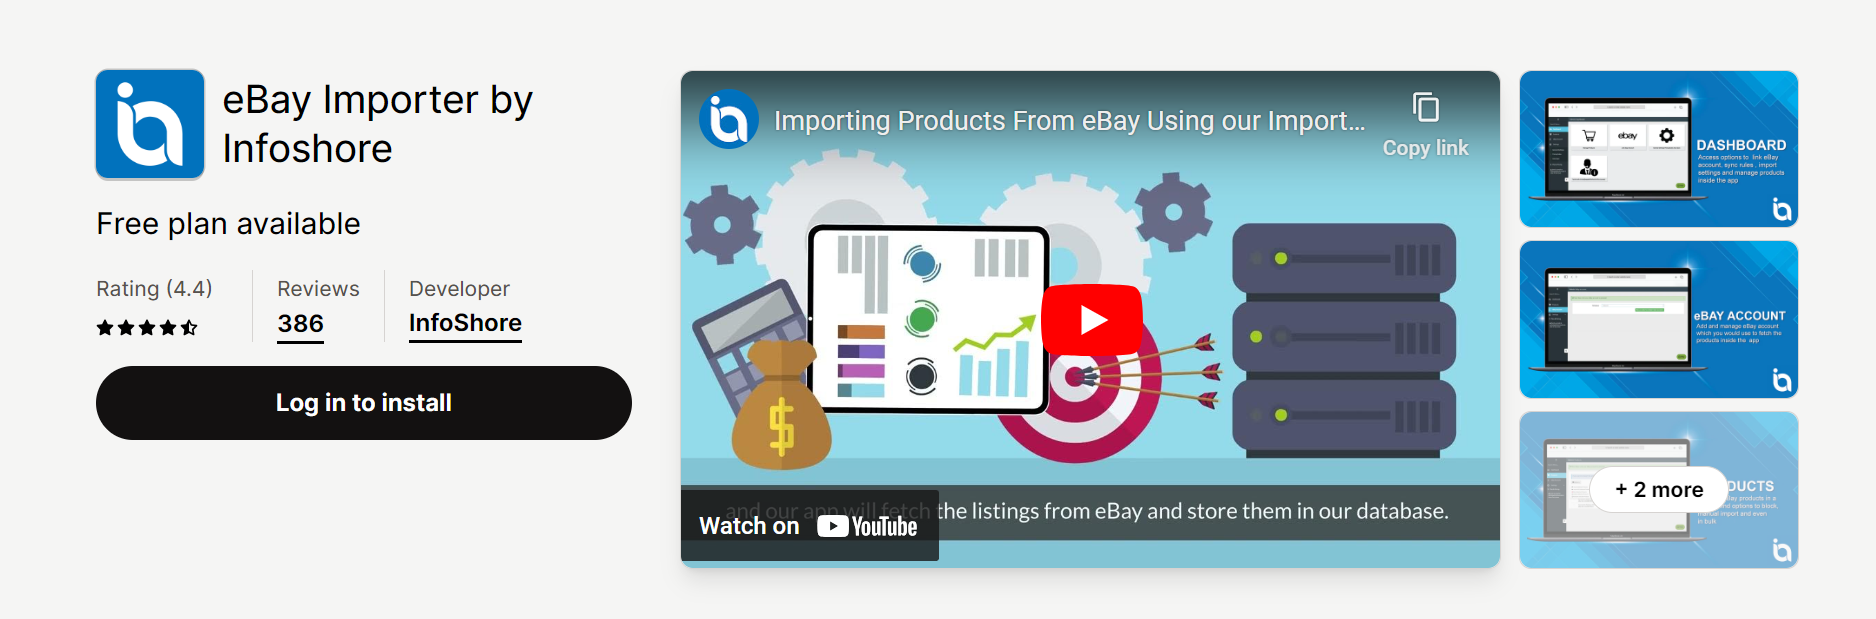 eBay Importer by Infoshore